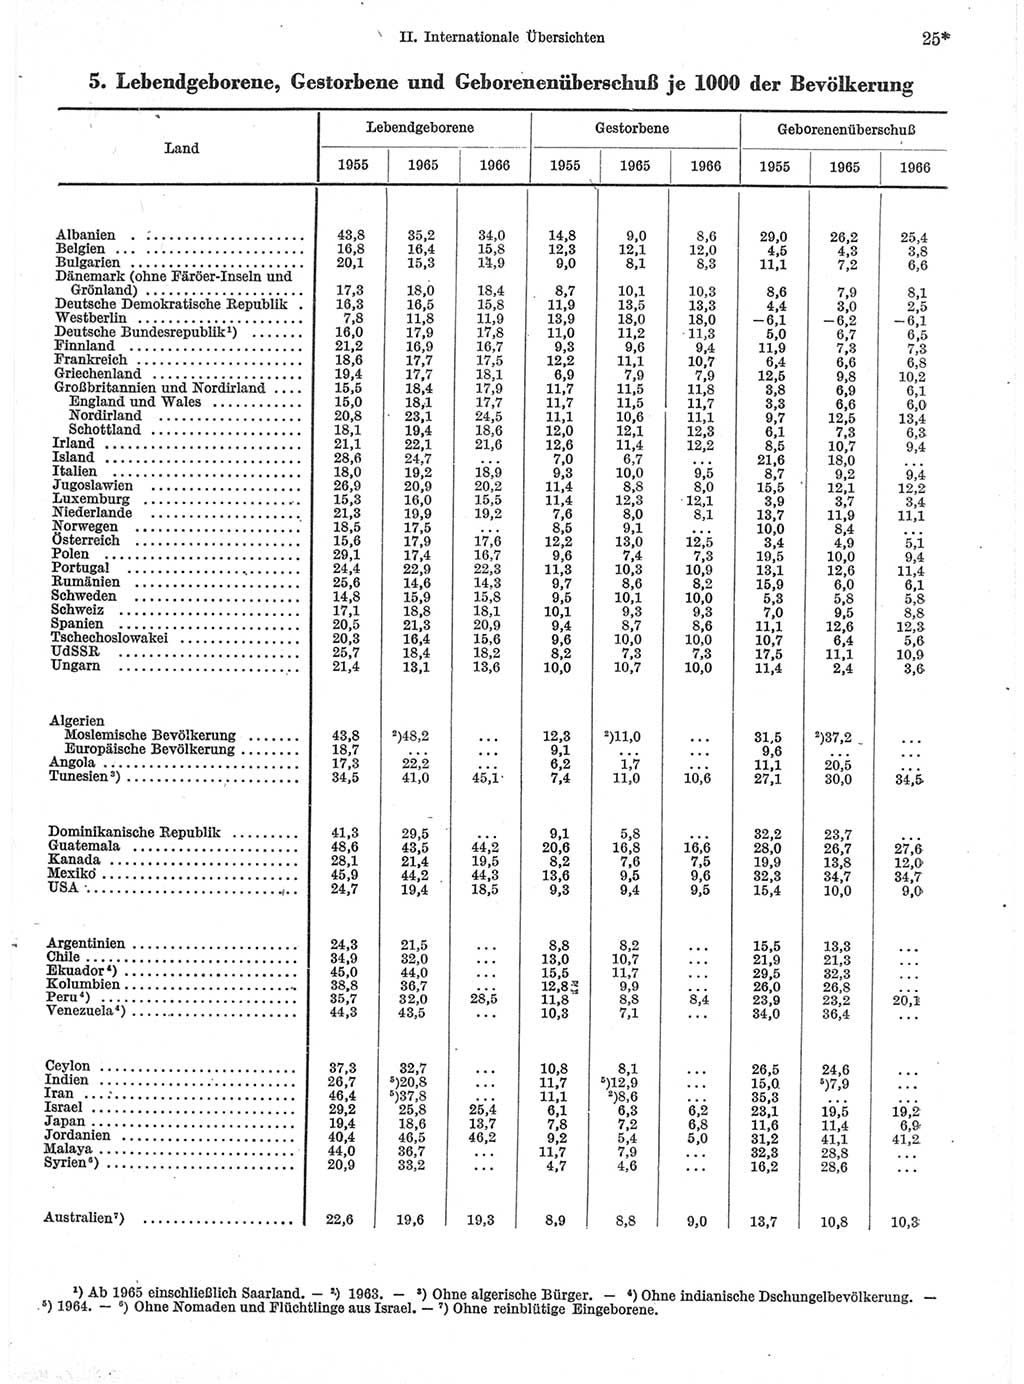 Statistisches Jahrbuch der Deutschen Demokratischen Republik (DDR) 1968, Seite 25 (Stat. Jb. DDR 1968, S. 25)